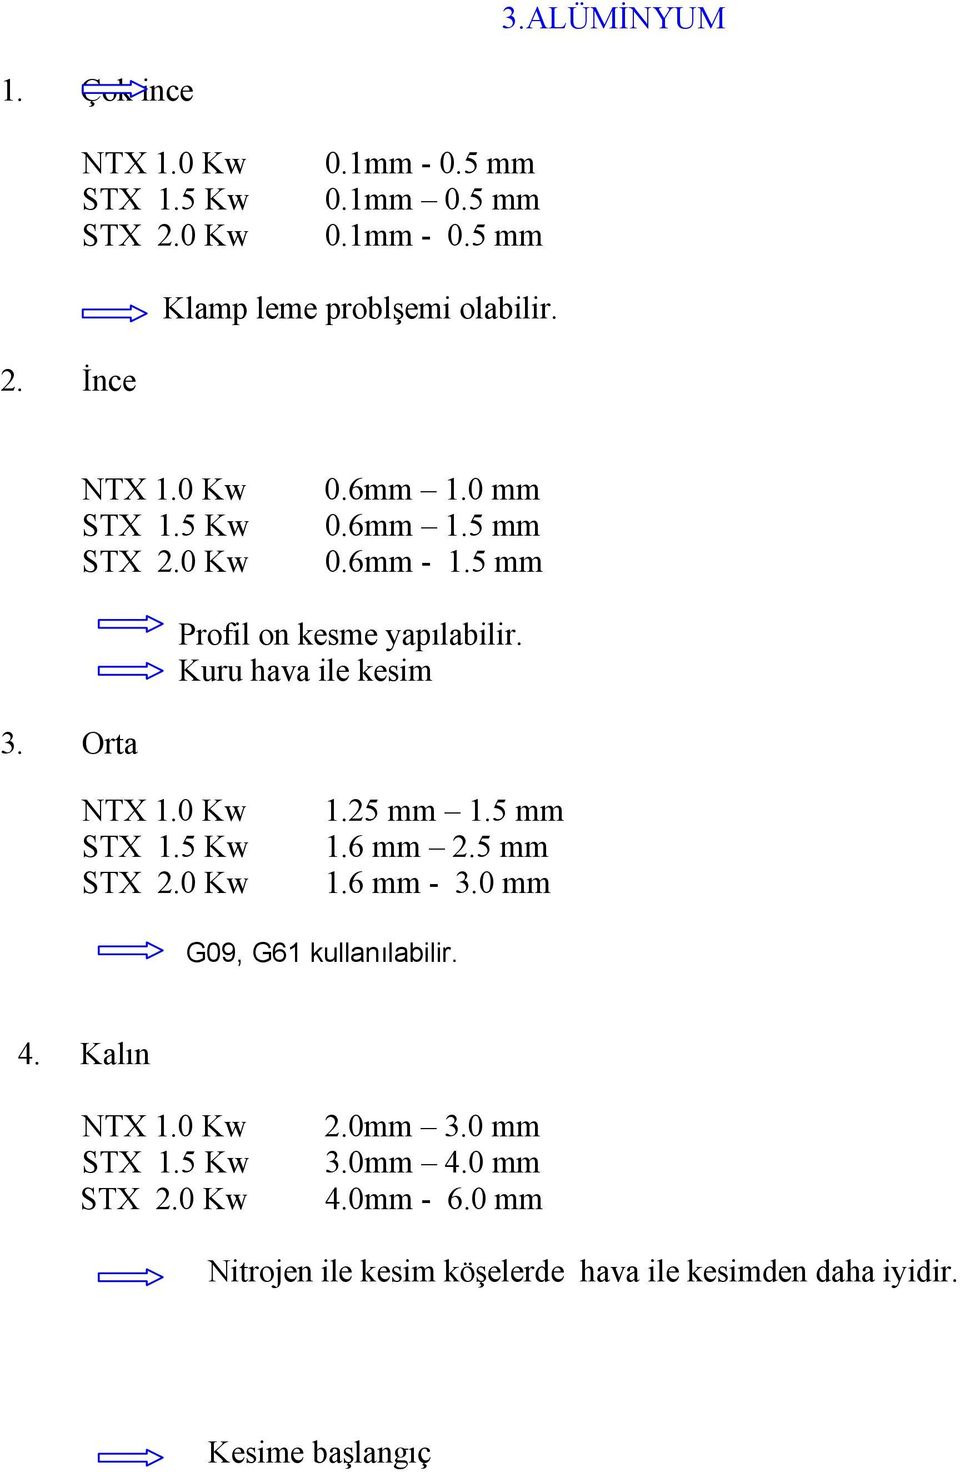 0 Kw STX 1.5 Kw STX 2.0 Kw 1.25 mm 1.5 mm 1.6 mm 2.5 mm 1.6 mm - 3.0 mm G09, G61 kullanılabilir. 4. Kalın NTX 1.0 Kw STX 1.5 Kw STX 2.0 Kw 2.